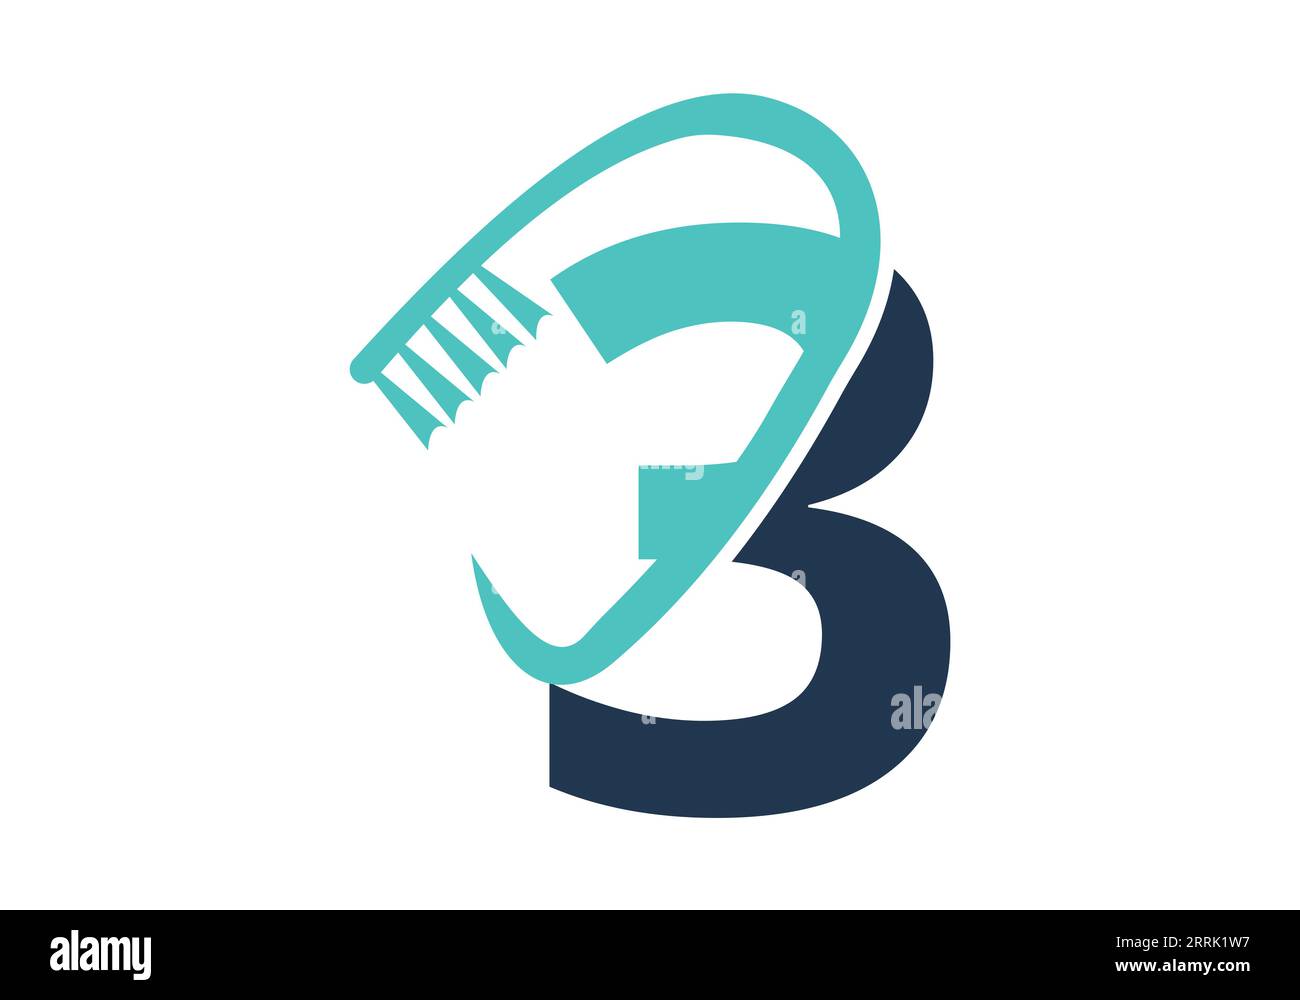 Anfangsbuchstabe 3 Dental-Logo Kombiniert Mit Zahnbürstensymbol. Dentalpflege-Logo entwirft Vektorvorlage Stock Vektor